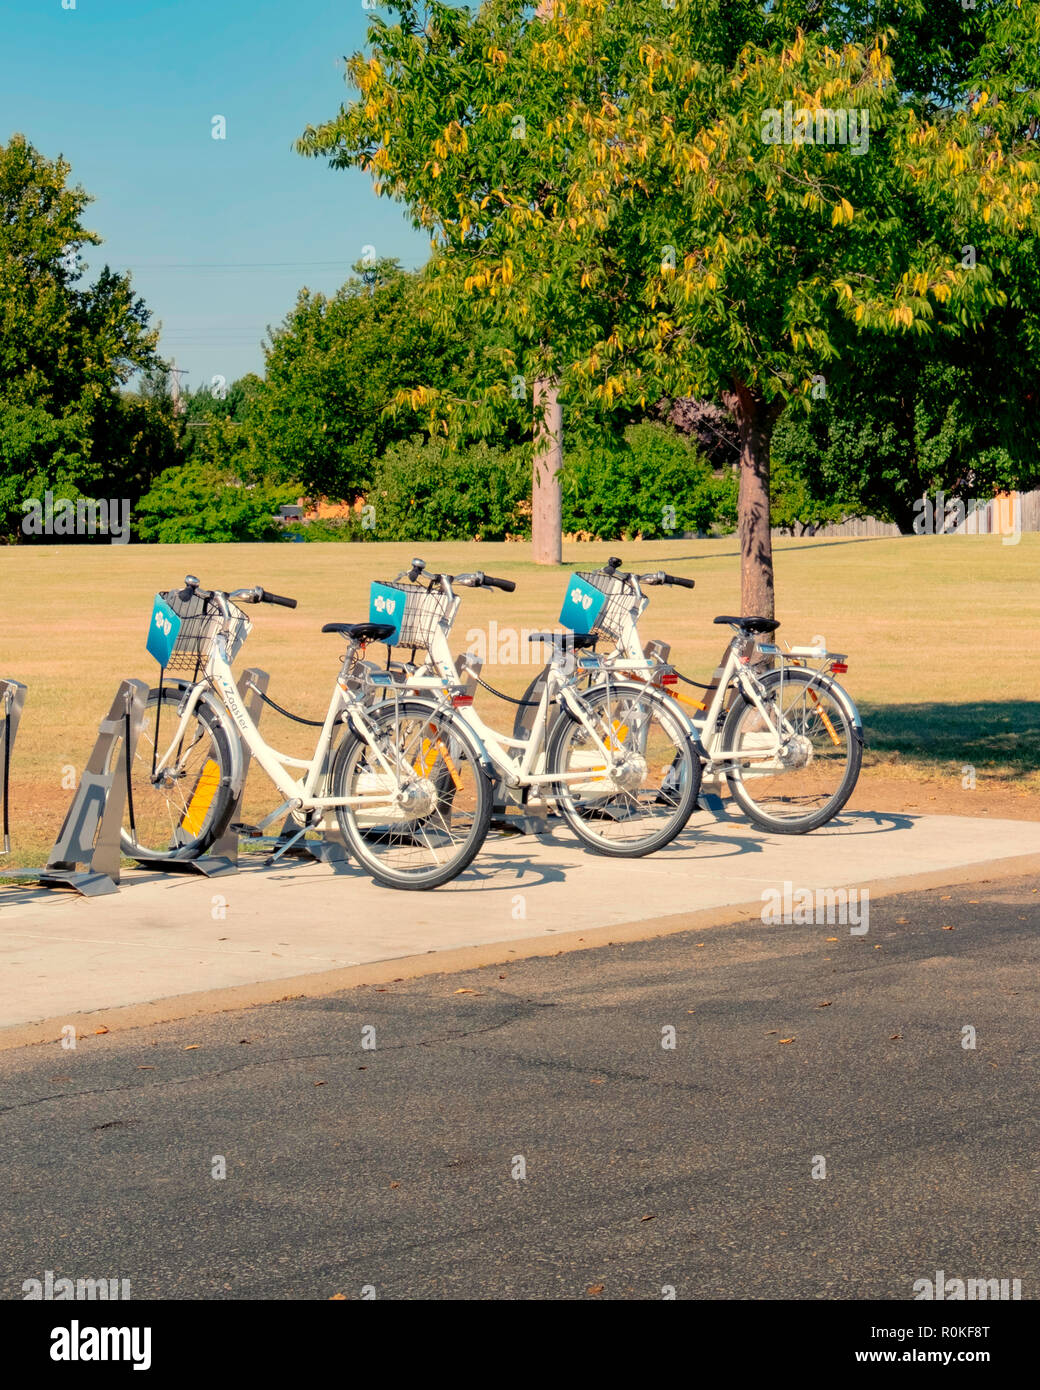 Le biciclette a noleggio bici, condividere, nei pressi di attrazione turistica di Wichita, Kansas, Stati Uniti d'America. Foto Stock